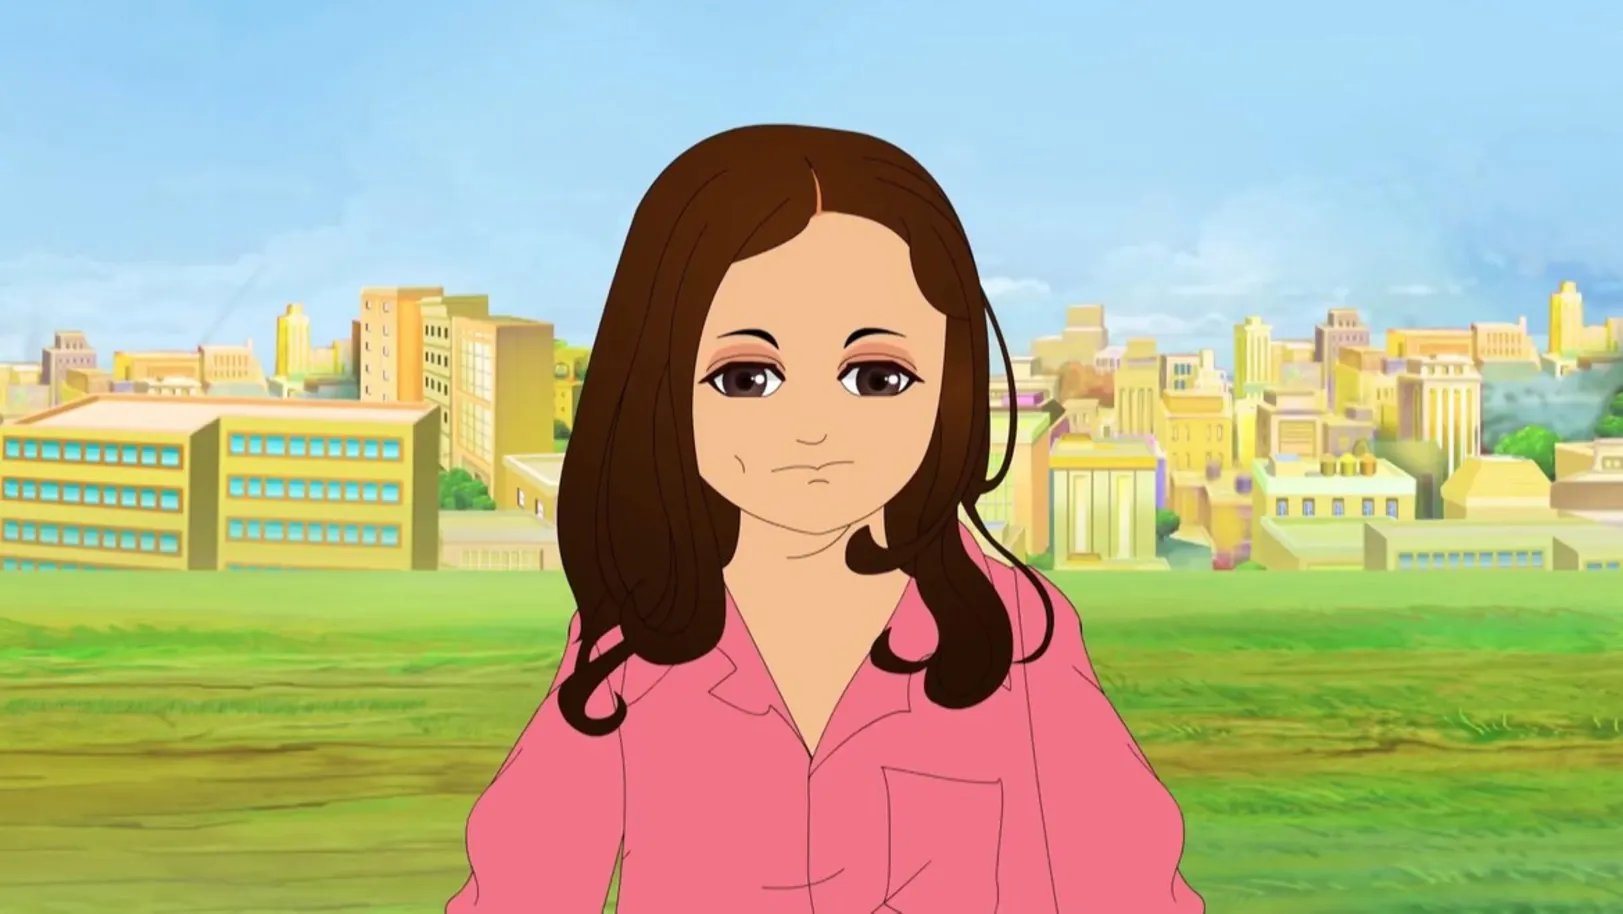 Bhootu Animation - October 18, 2020 - Episode Spoiler